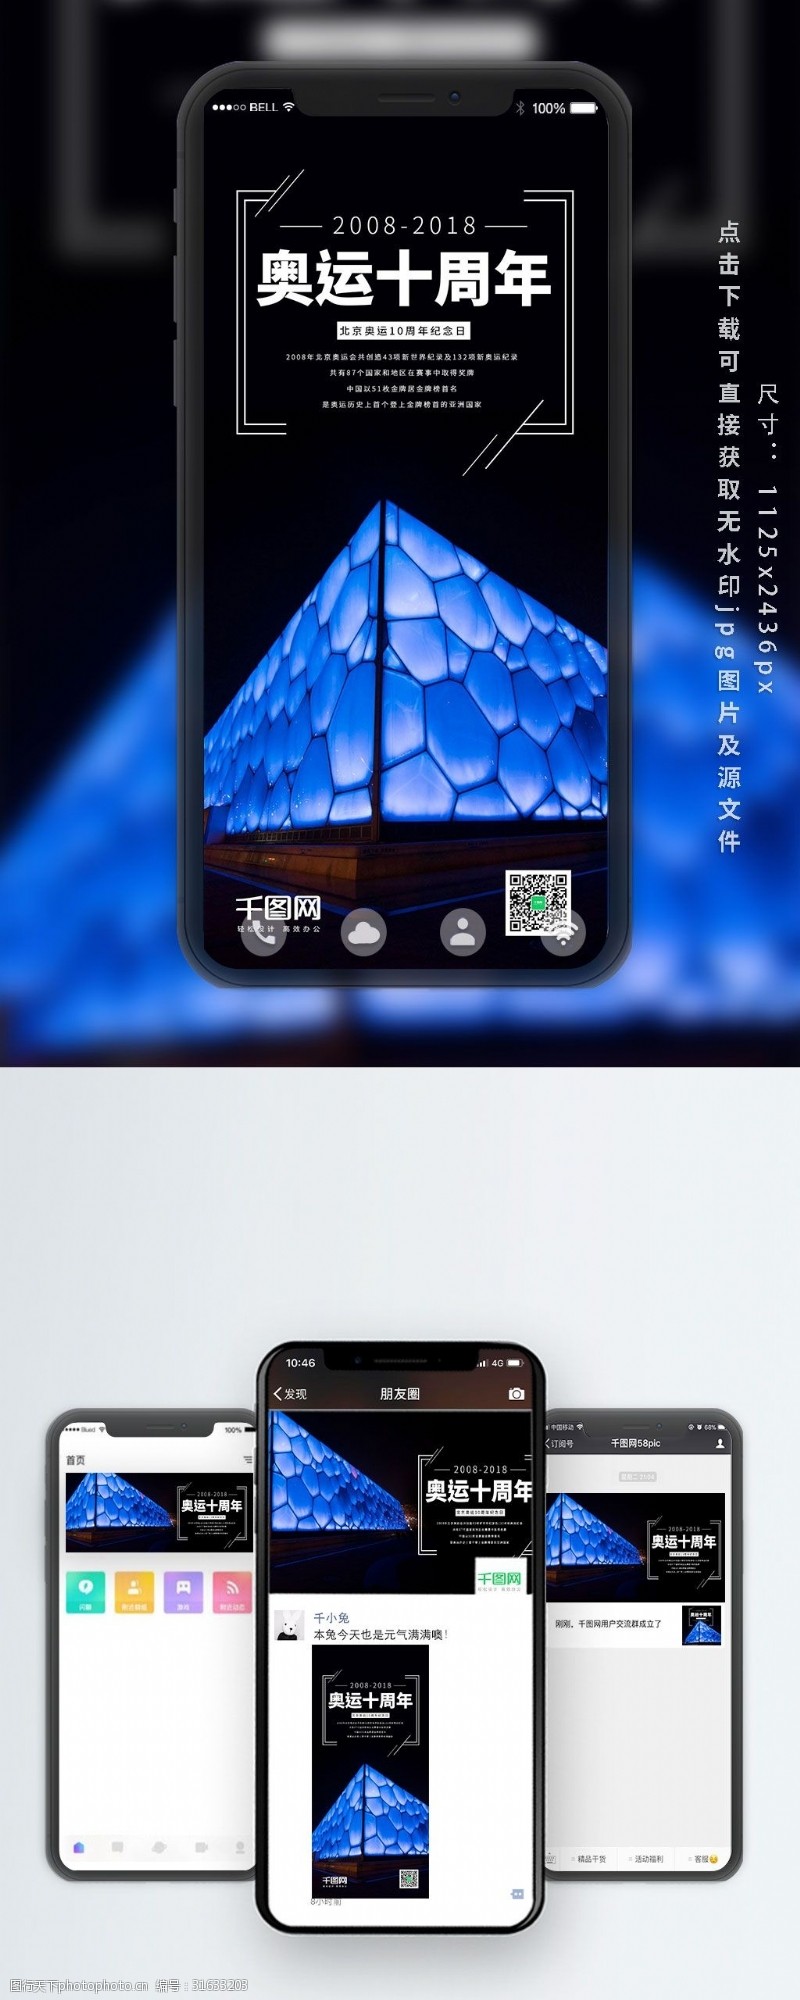 微博配图北京奥运会十周年纪念日手机海报设计